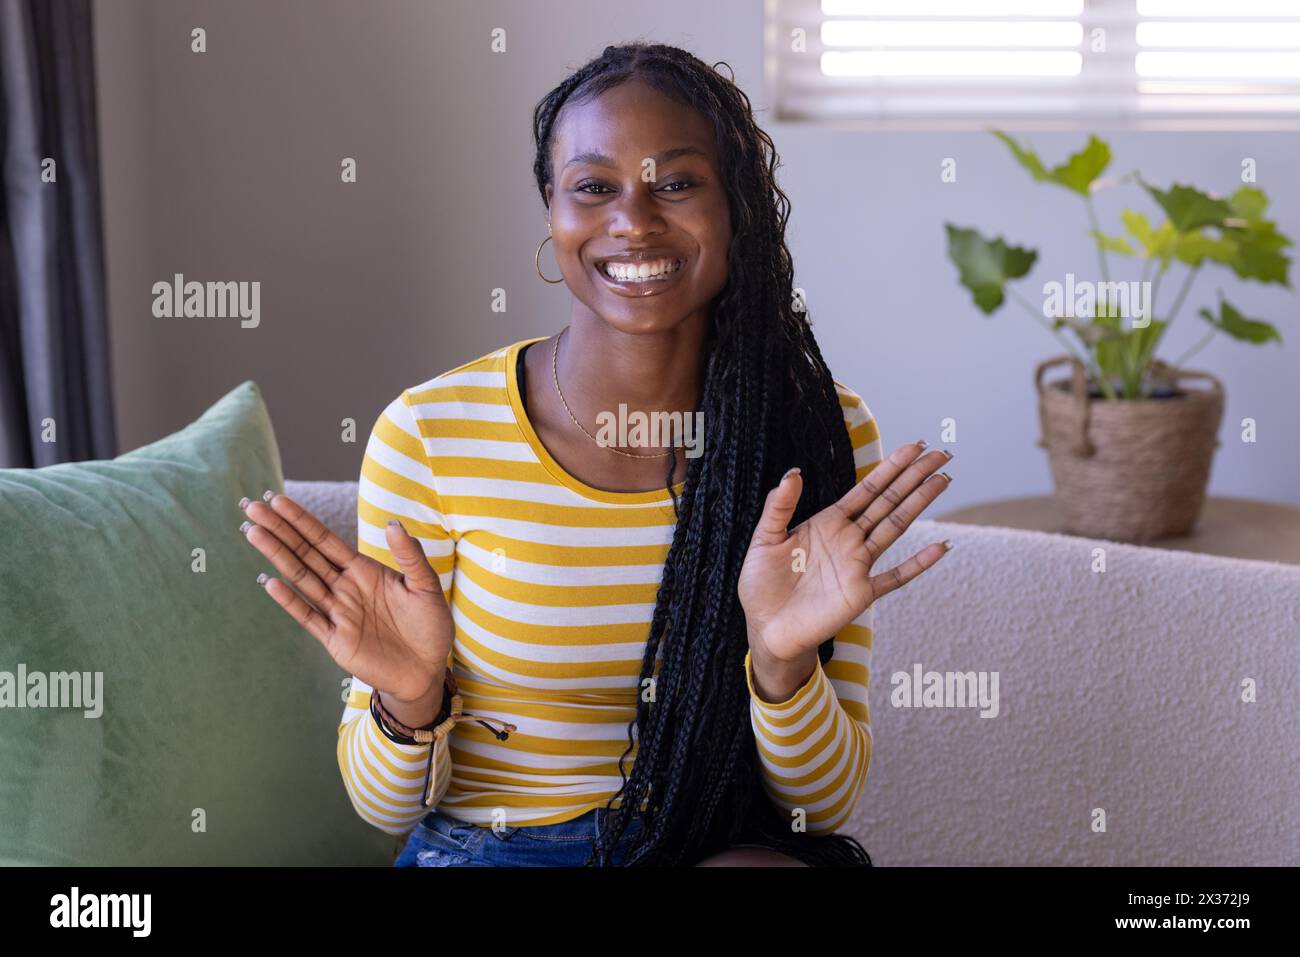 Jeune femme afro-américaine assise à la maison, applaudissant des mains, portant une chemise rayée pendant un appel vidéo, espace copie. Elle a de longs cheveux tressés, un frère Banque D'Images